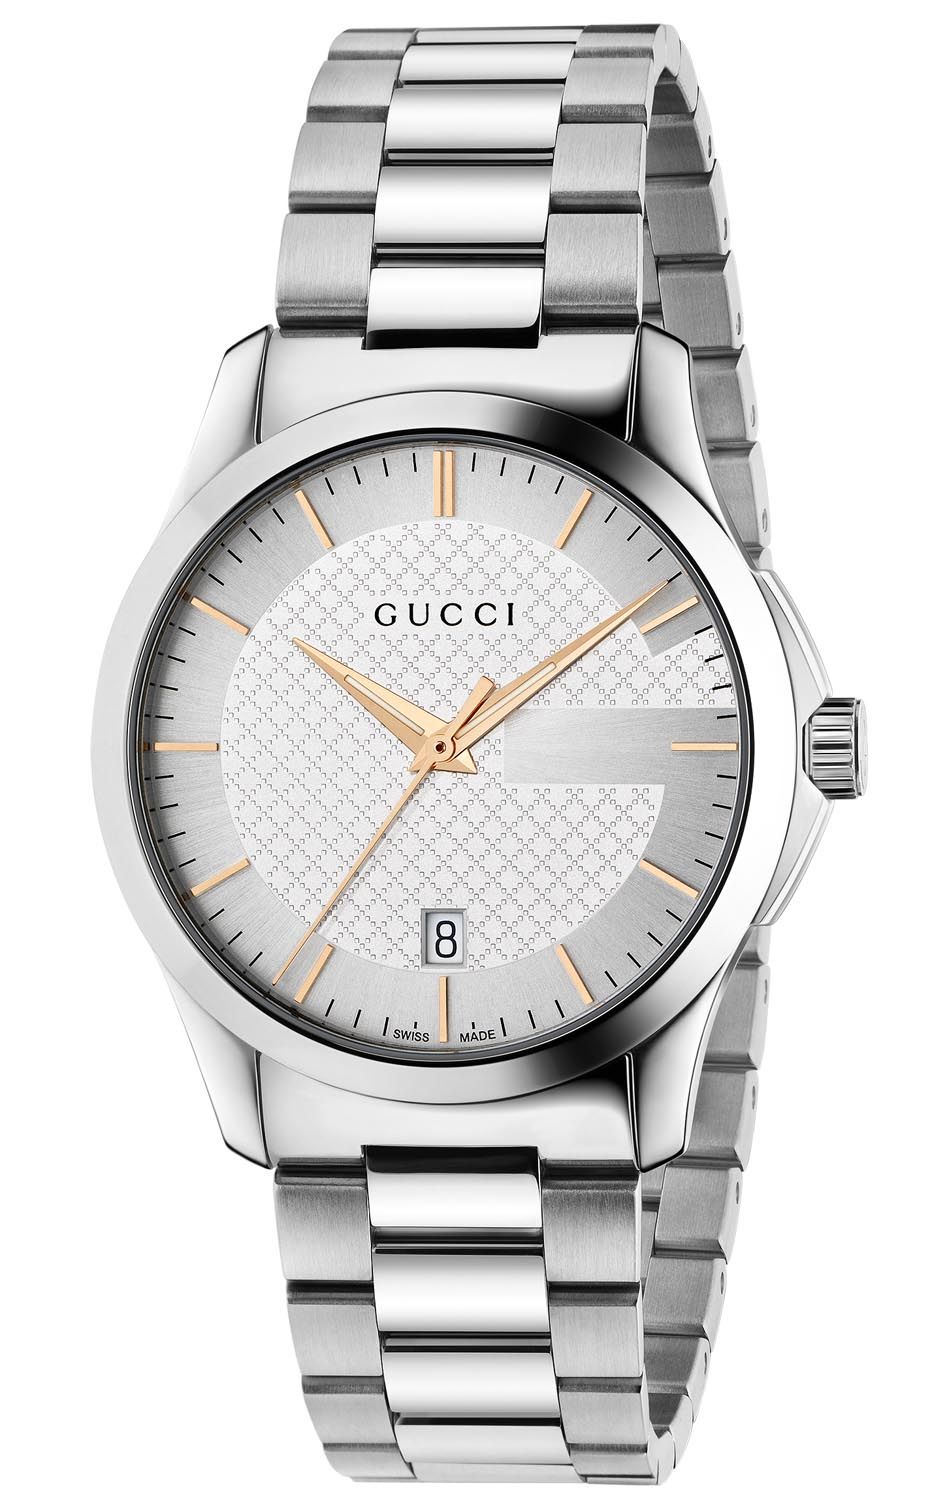 anbefale velstand Slik 38mm Gucci ur med datoviser og safirglas - Gucci G-Timeless 38mm YA126442